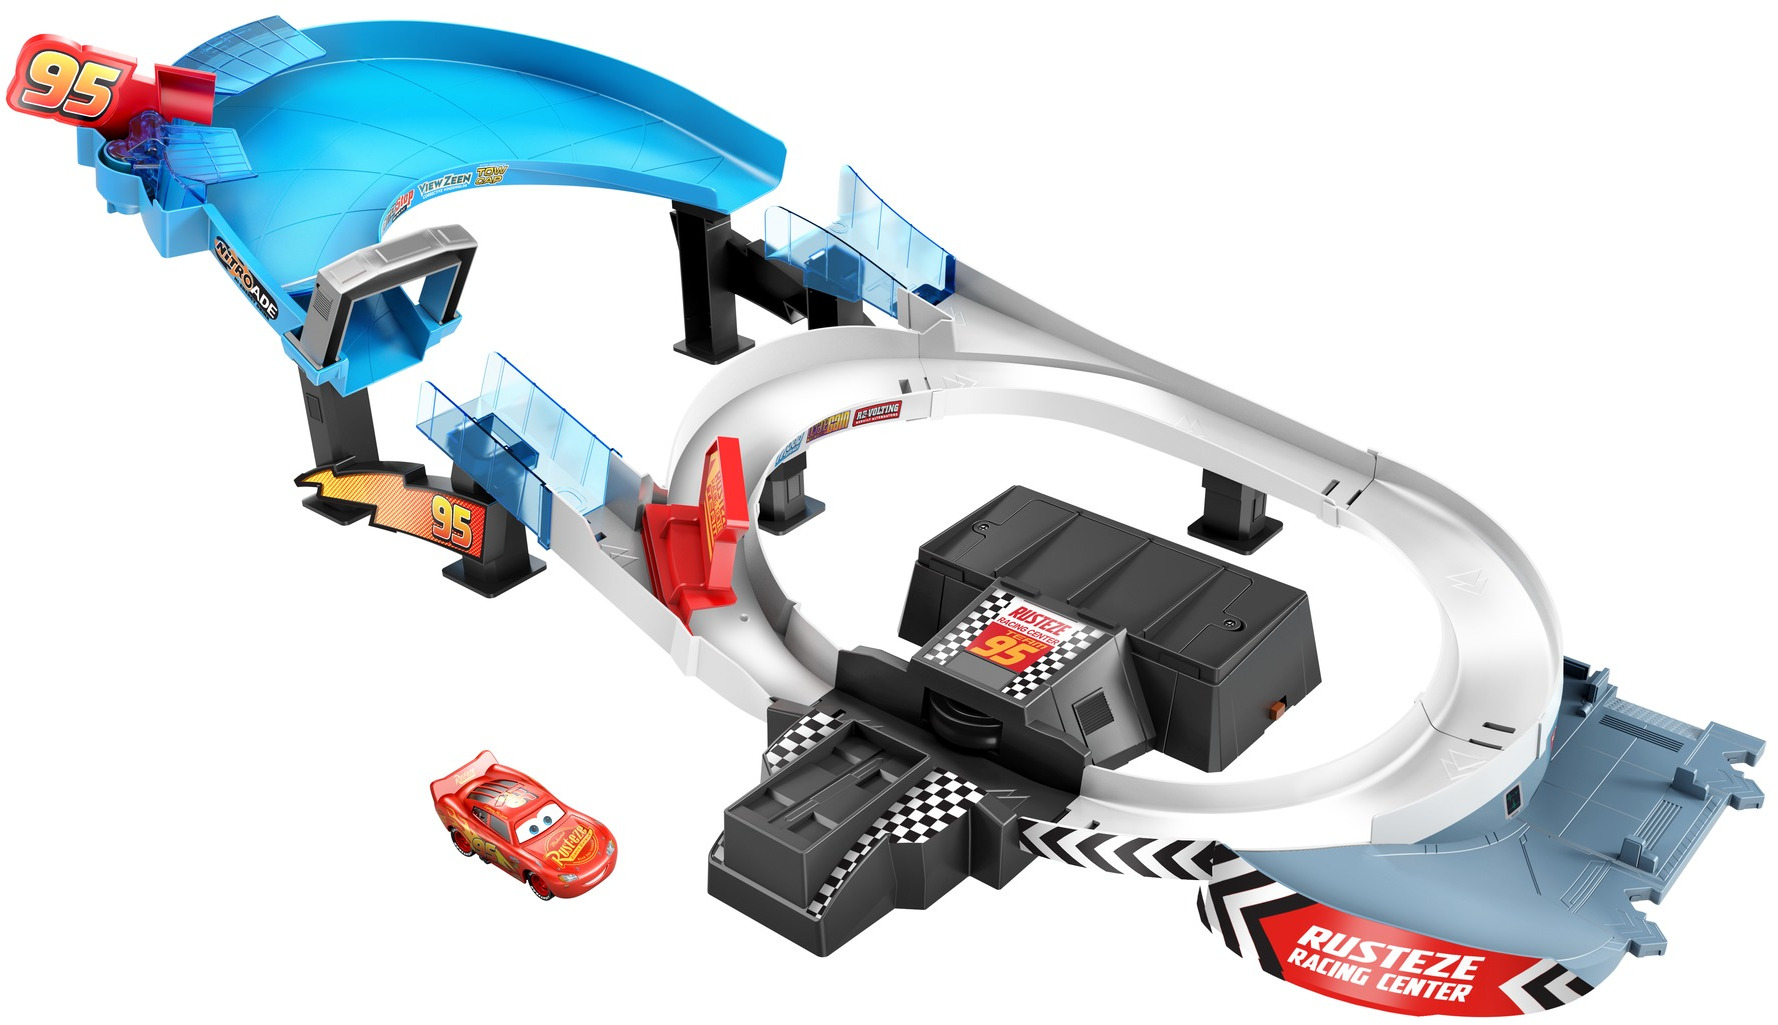 Disney Pixar Cars Rusteze Double Circuit Speedway Playset (Lightning McQueen Vehicle) $25 - Amazon / Walmart